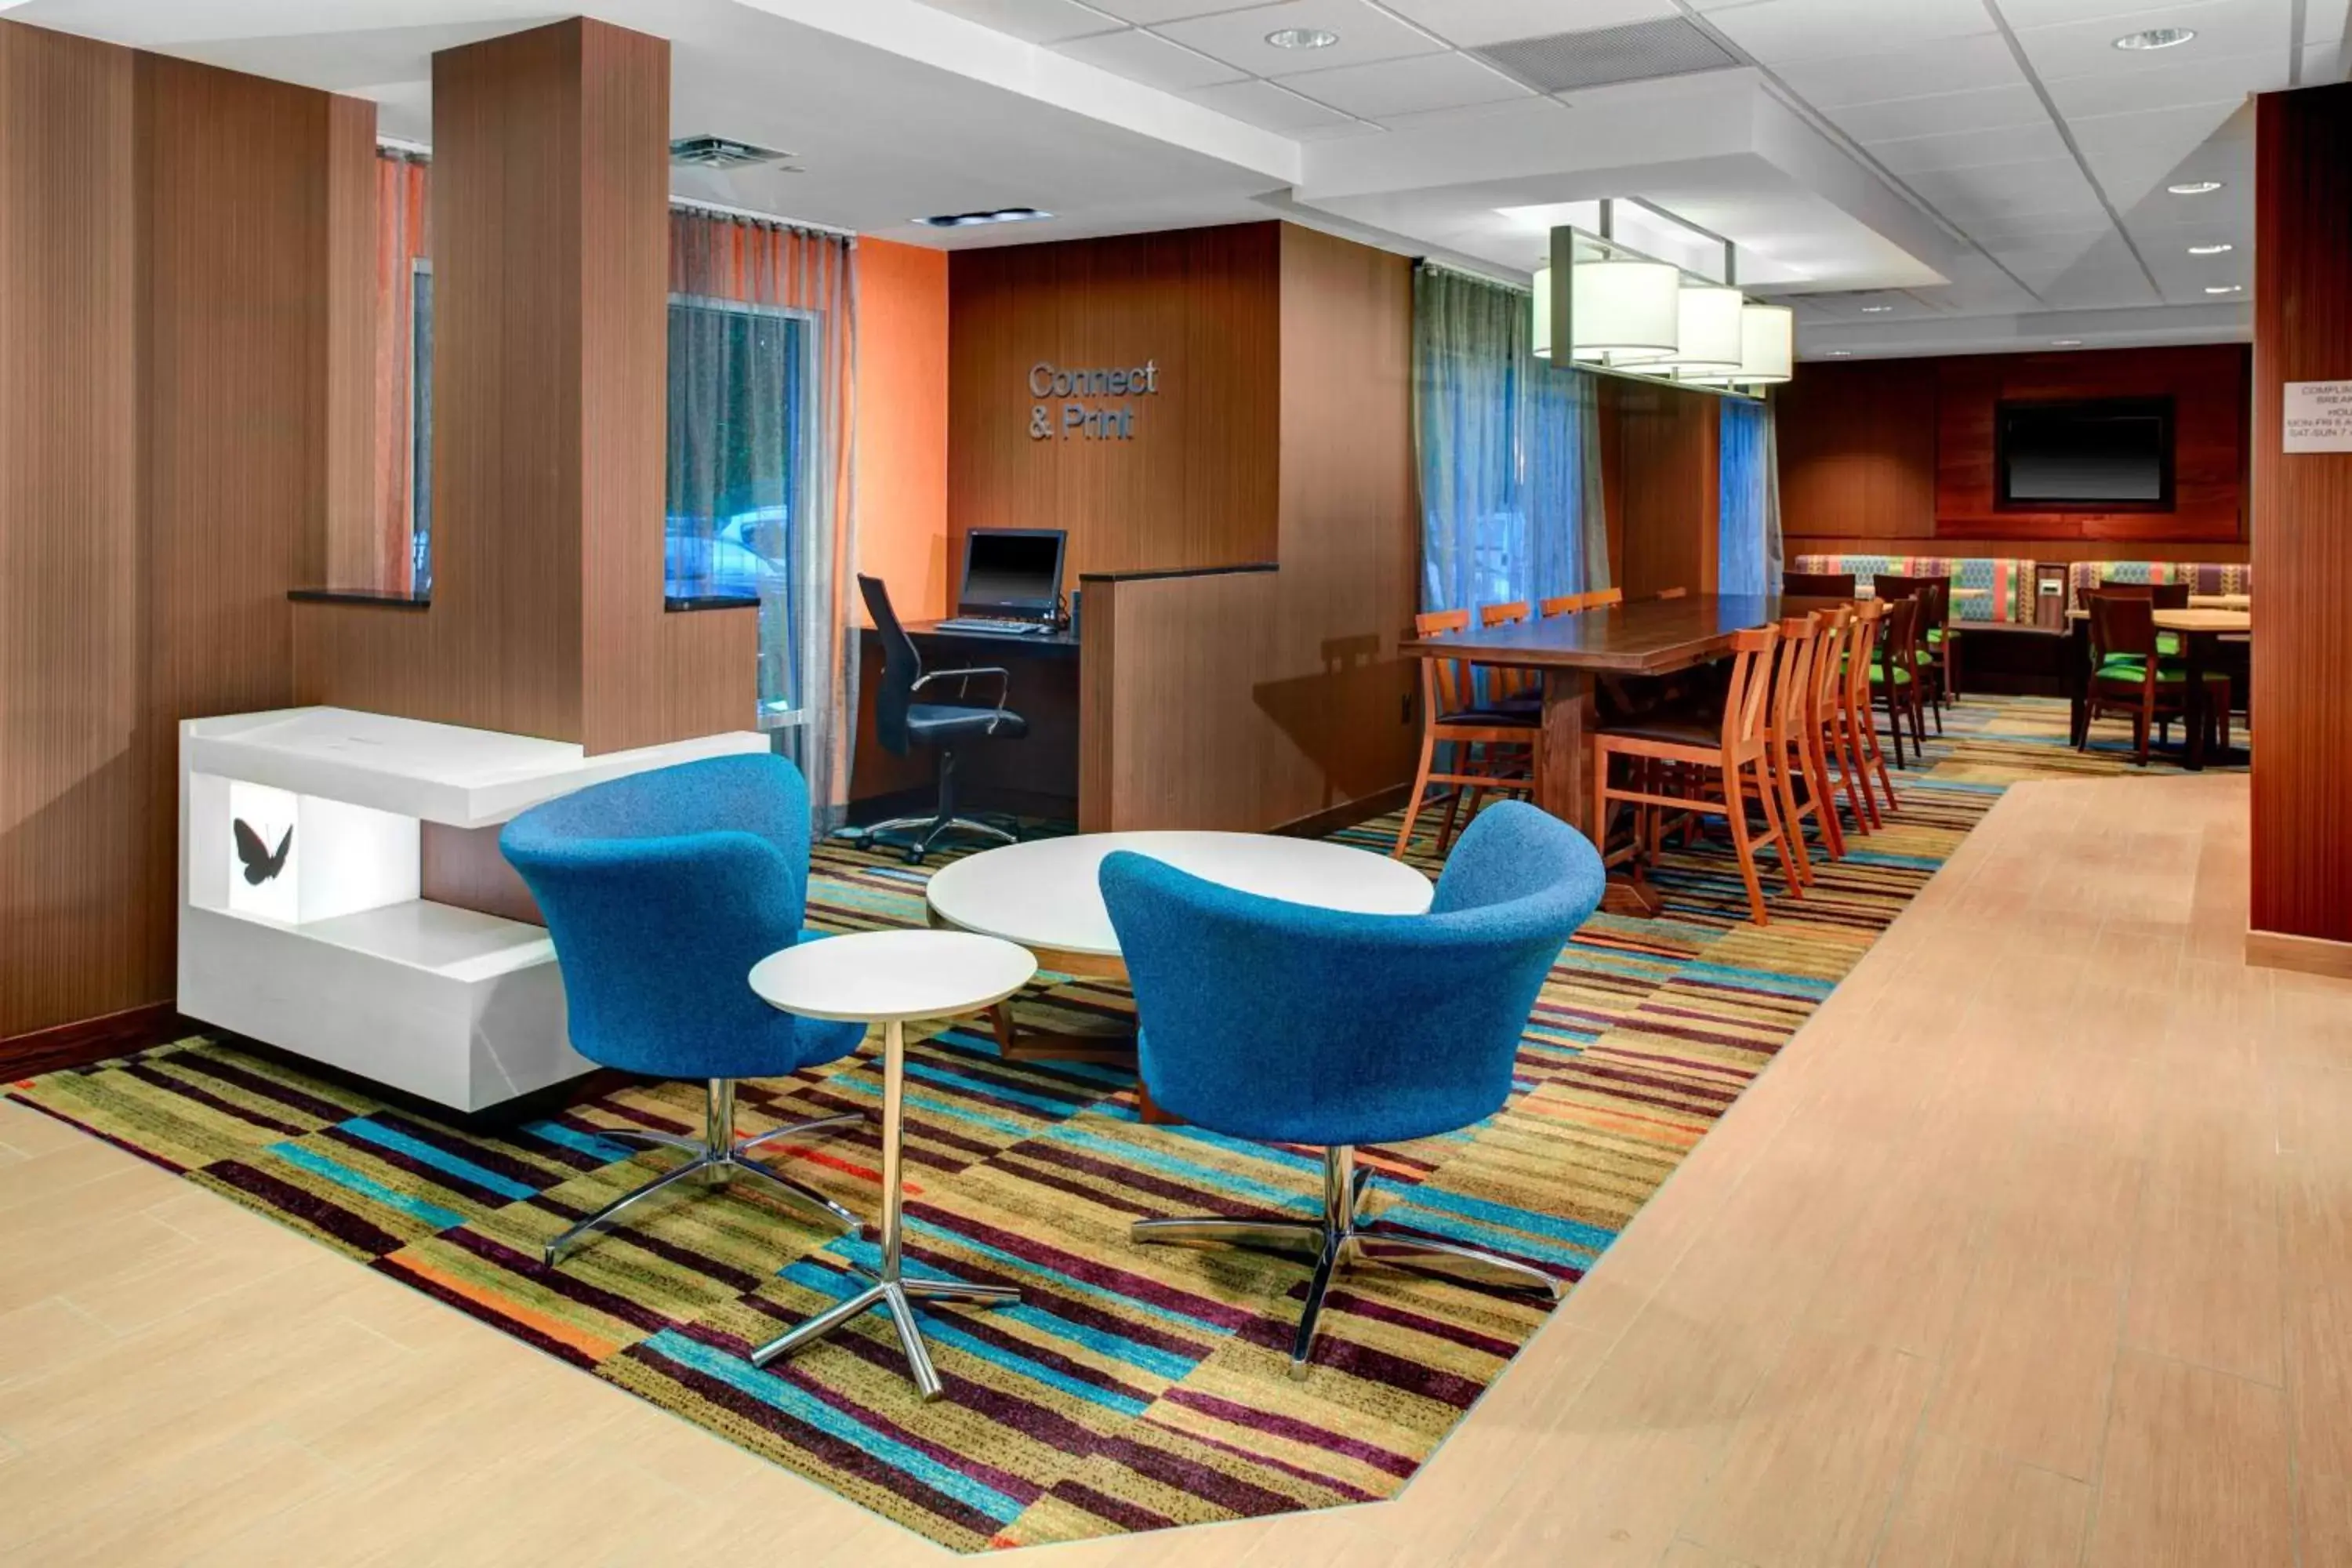 Lobby or reception in Fairfield Inn & Suites by Marriott Atlanta Alpharetta